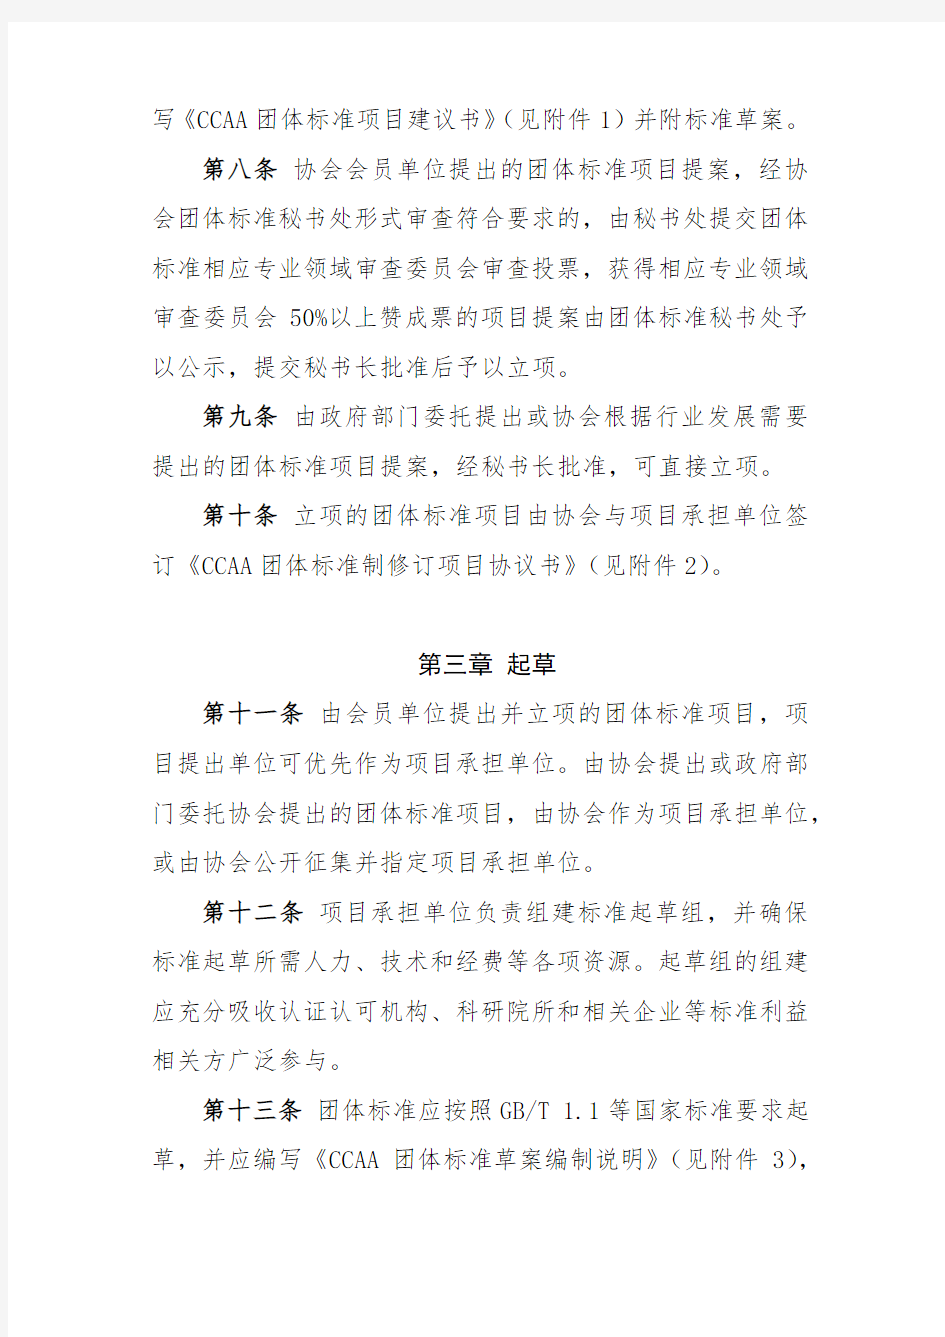 中国认证认可协会团体标准制修订工作细则